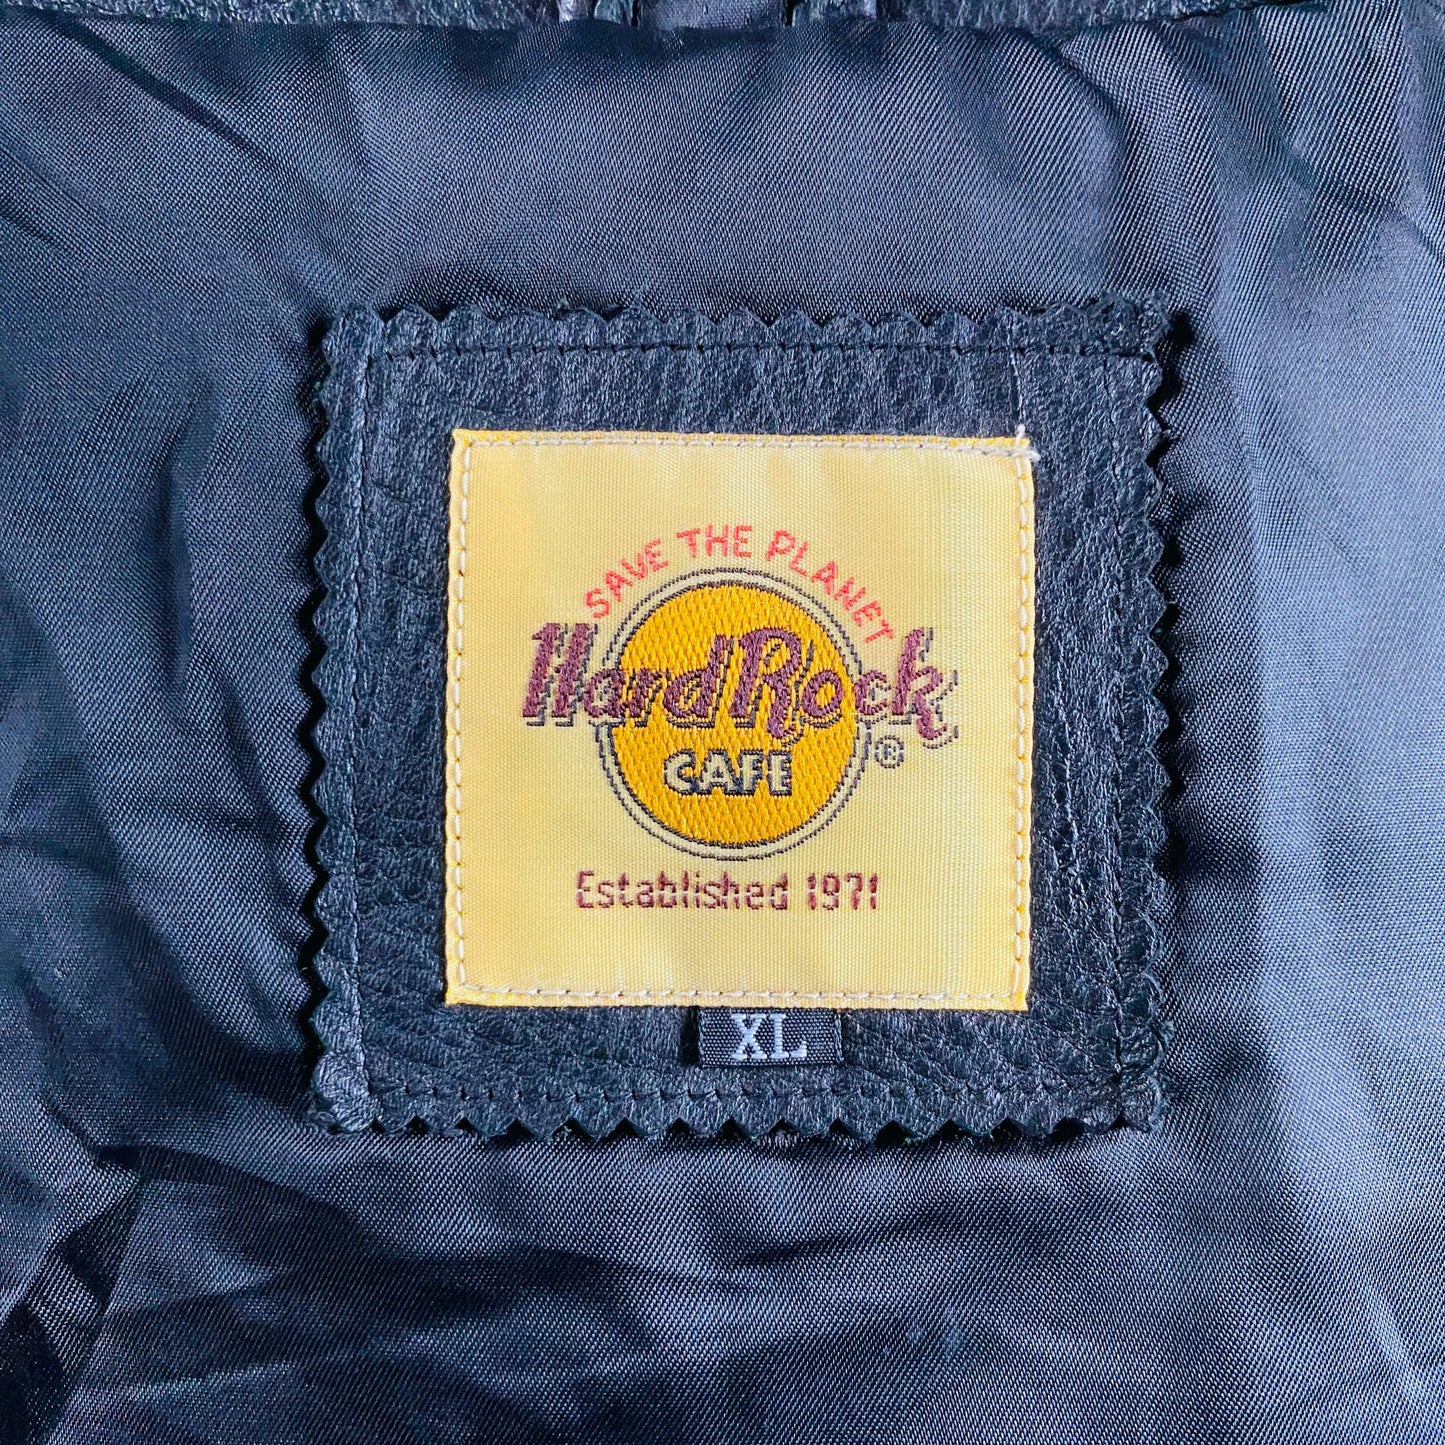 
                  
                    Unisex Hard Rock Cafe Leather Bomber Jacket - XL
                  
                